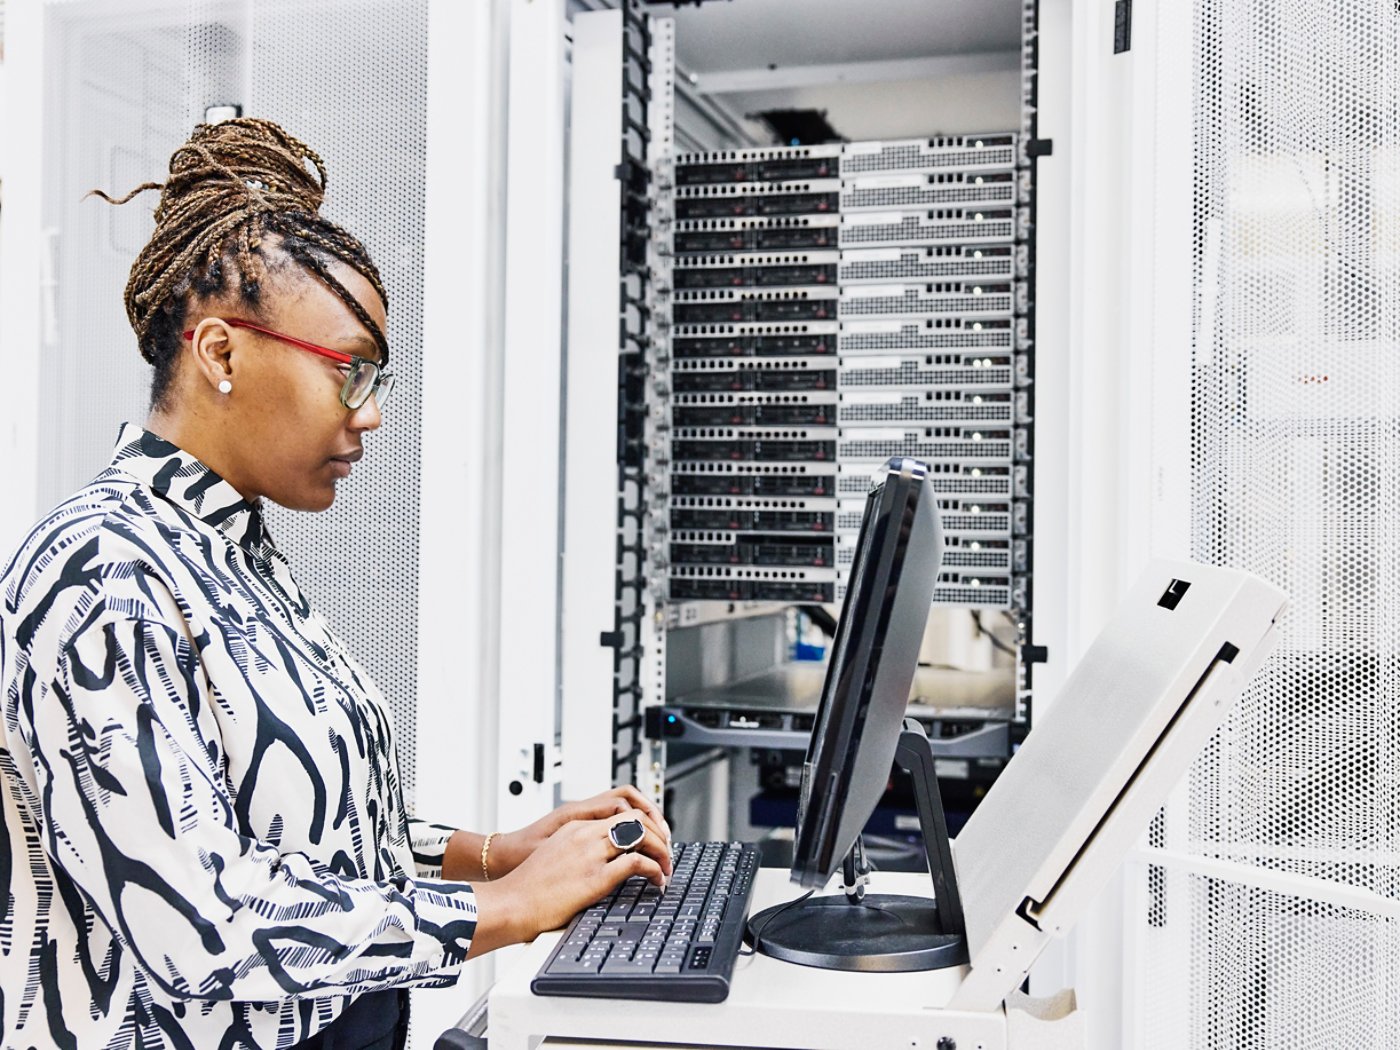 Medium shot of female IT professional configuring server in data center